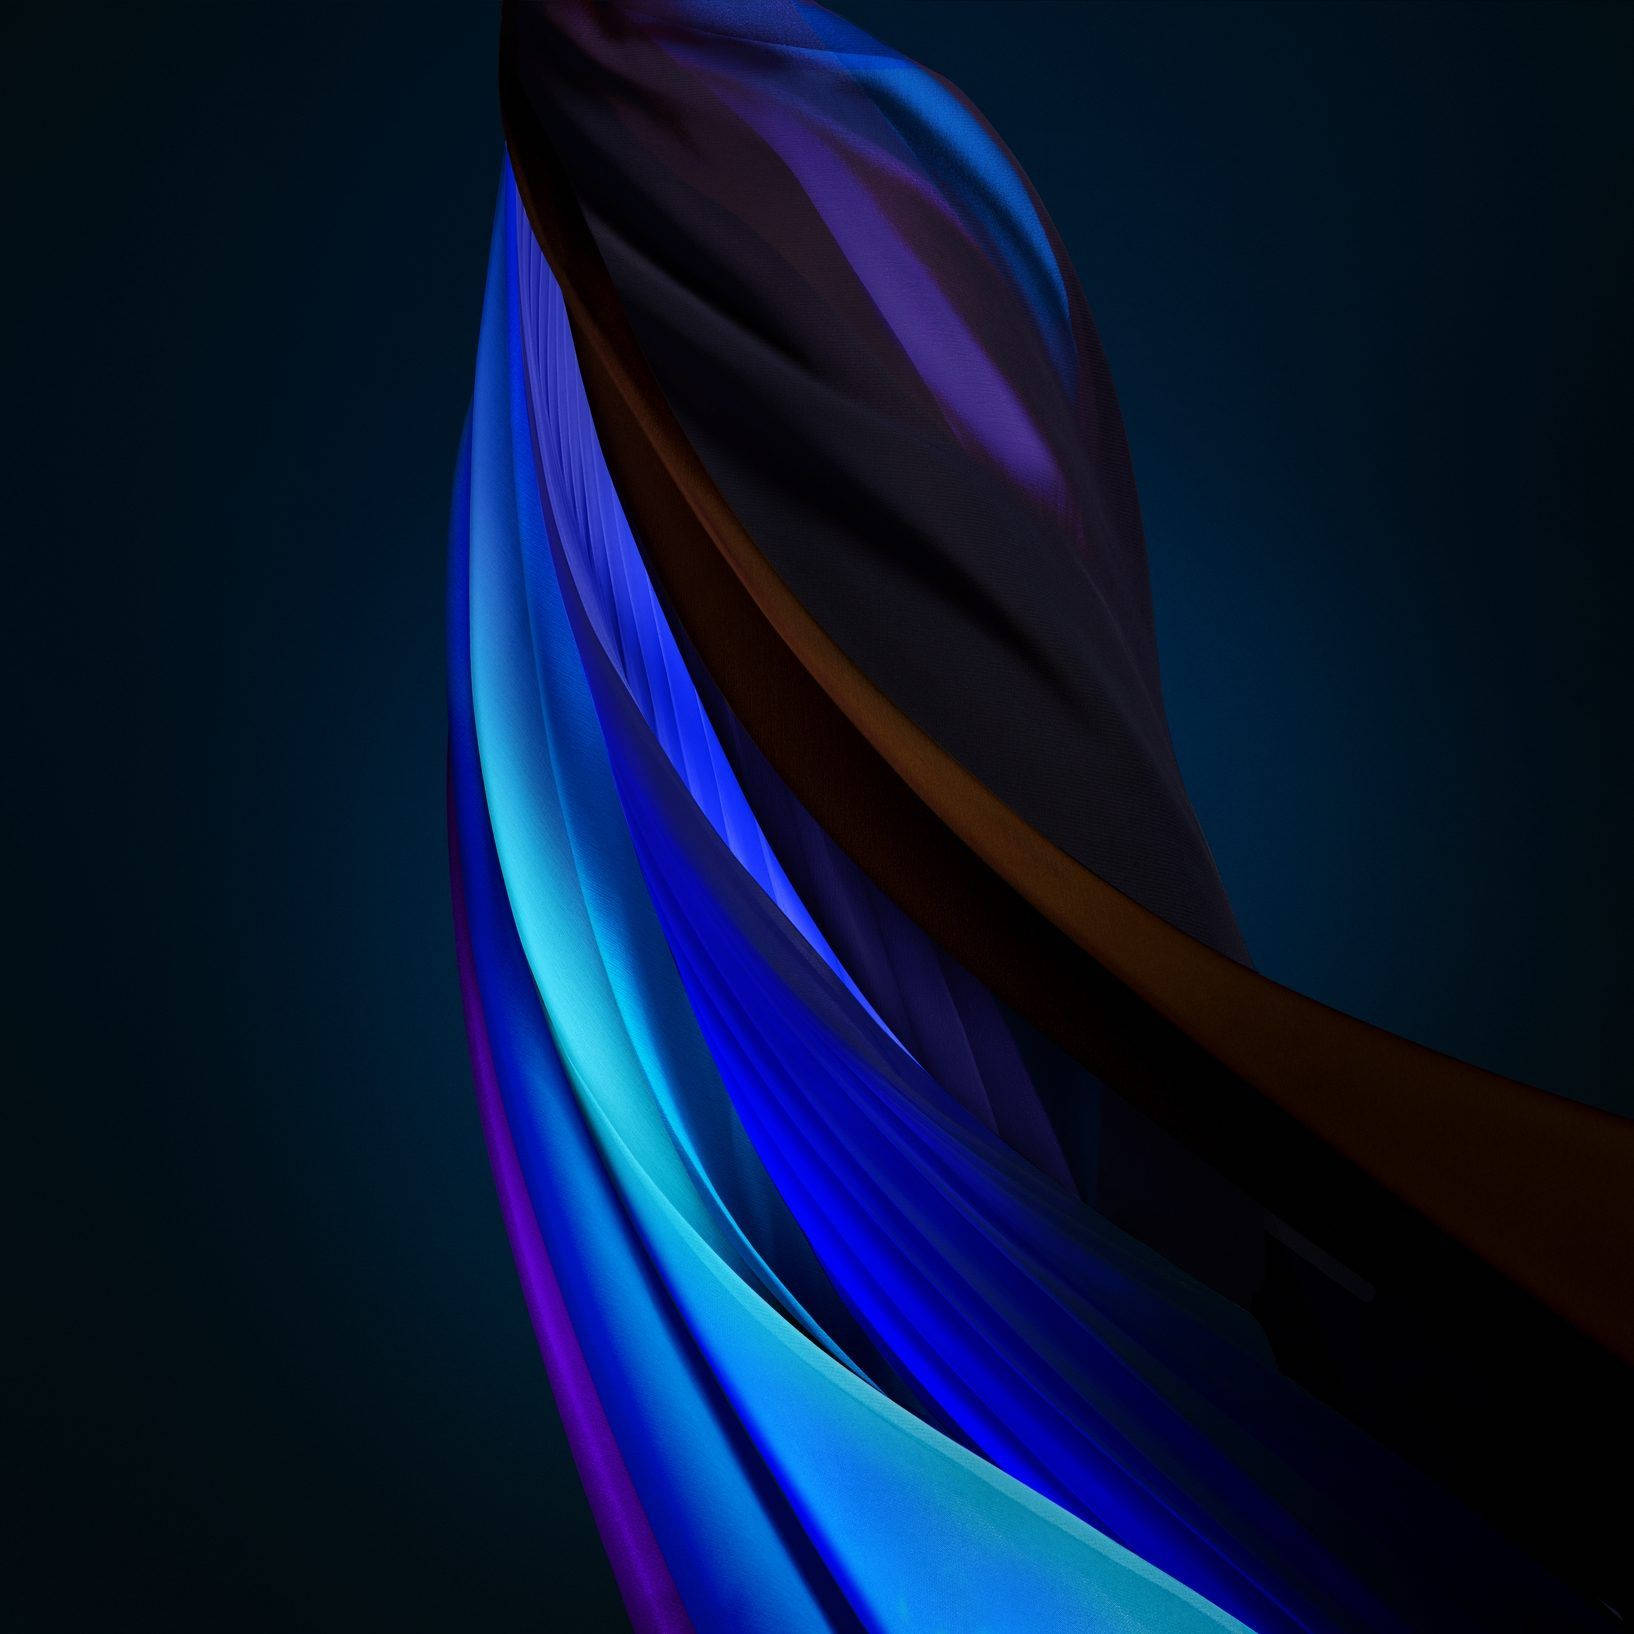 Vibrant Mix of Colors Representative of iOS 15 Wallpaper